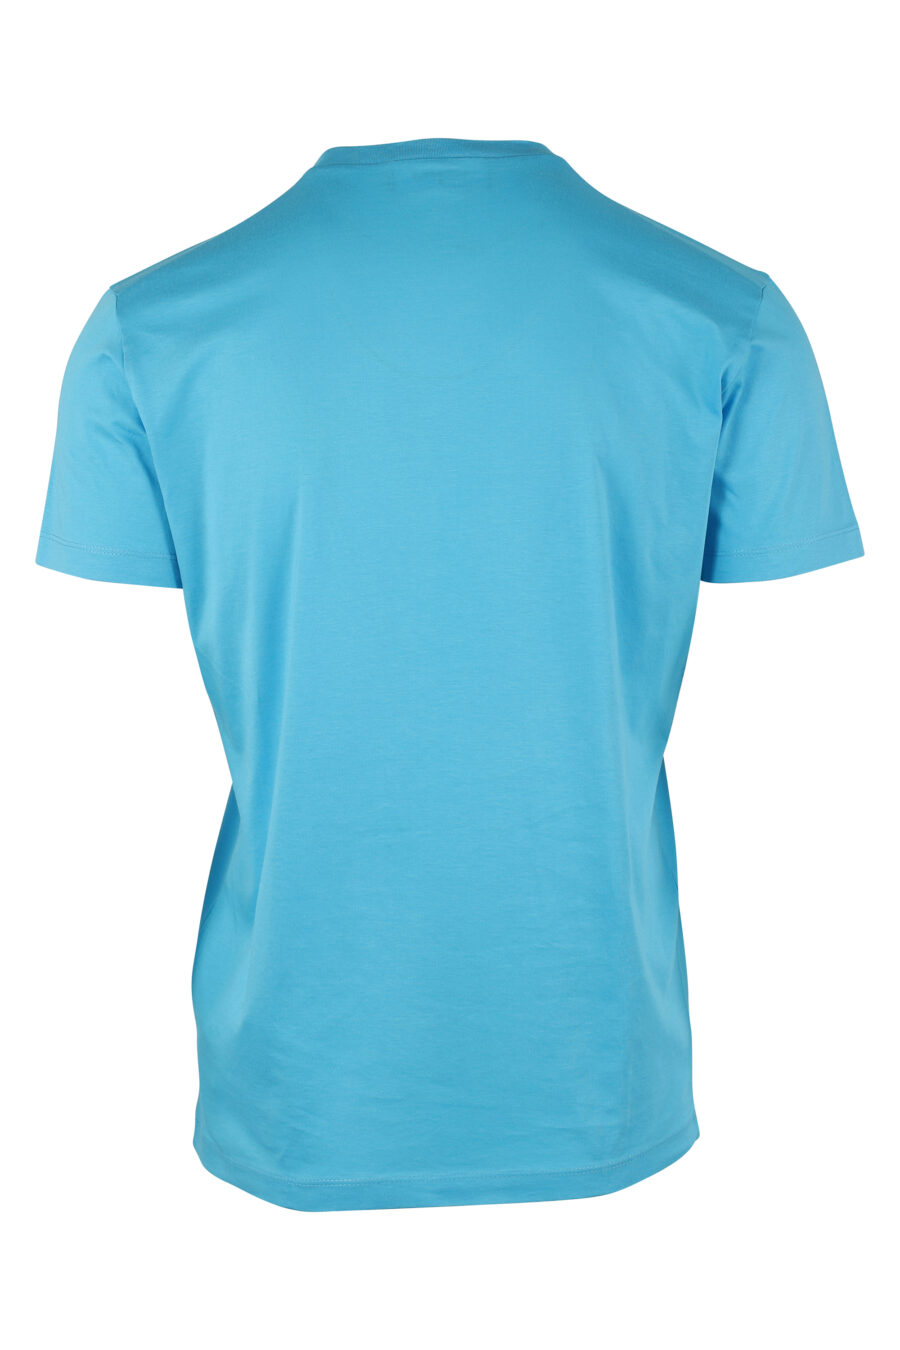 Camiseta azul cielo con doble logo "icon" - IMG 9742